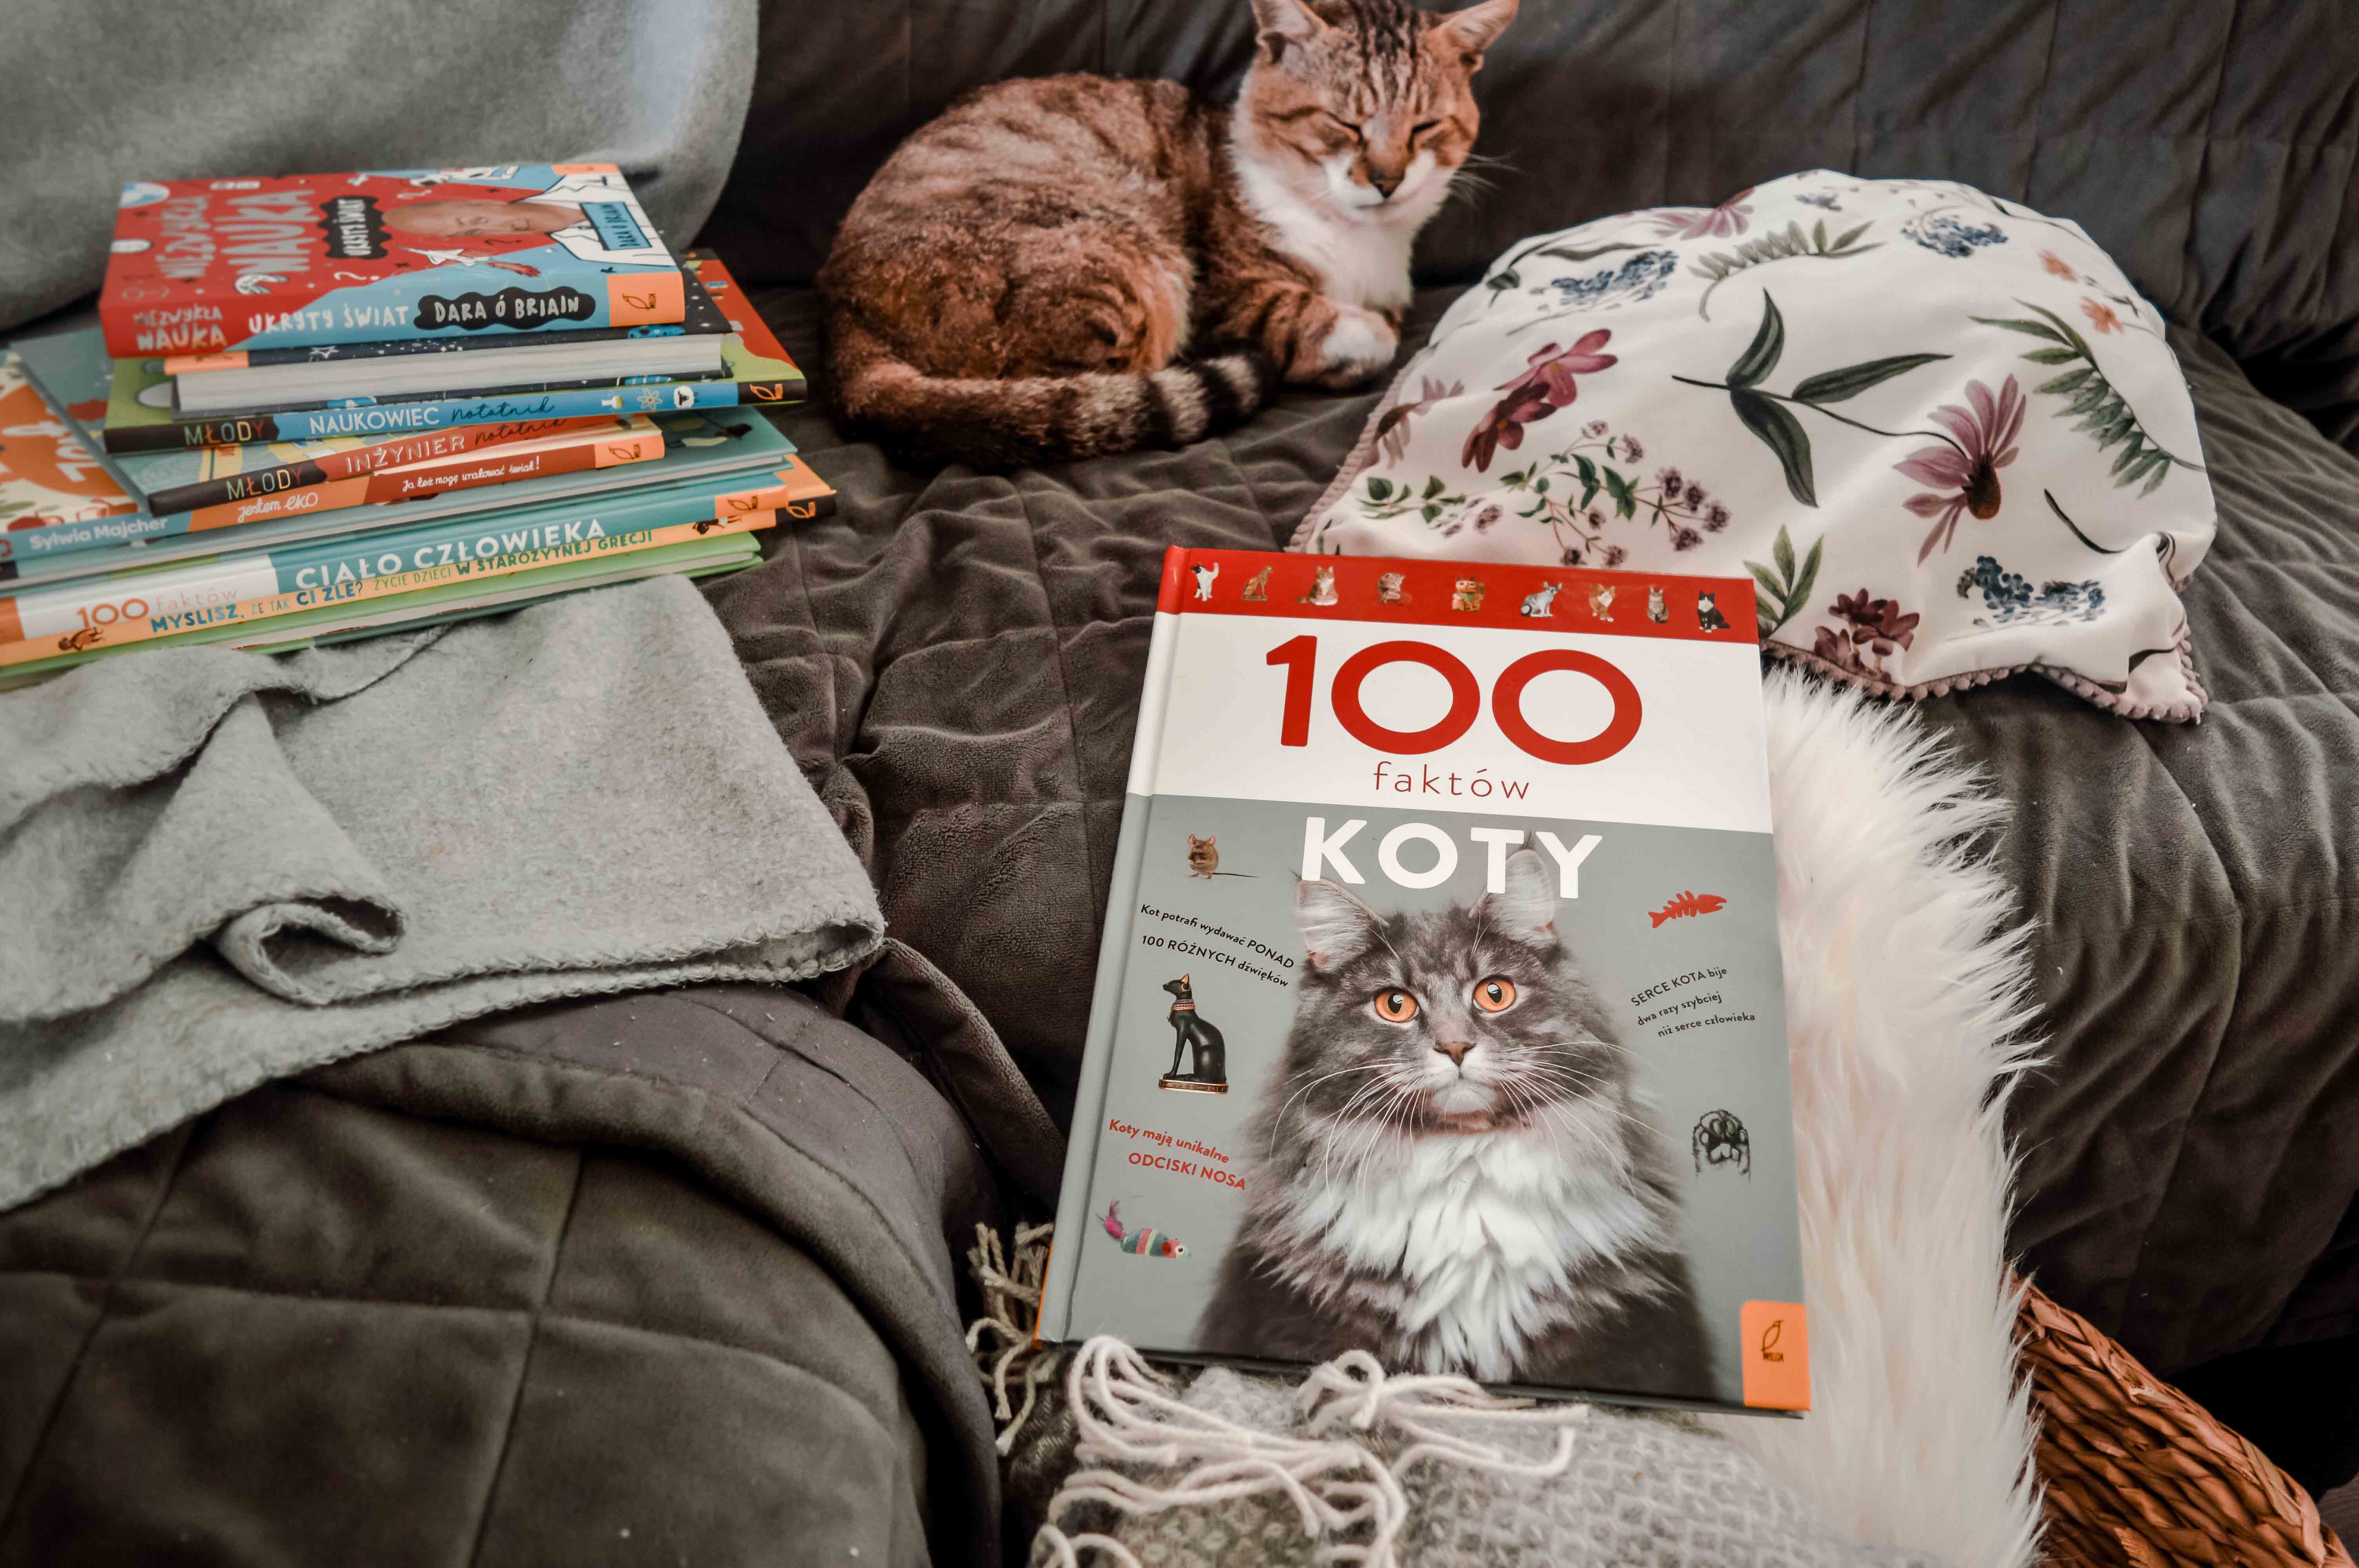 ksiażka dla dzieci o kotach - 100 faktów o kotach wydawnictwo Wilga - ksiązka naukowa o kotach o ich zwyczajach